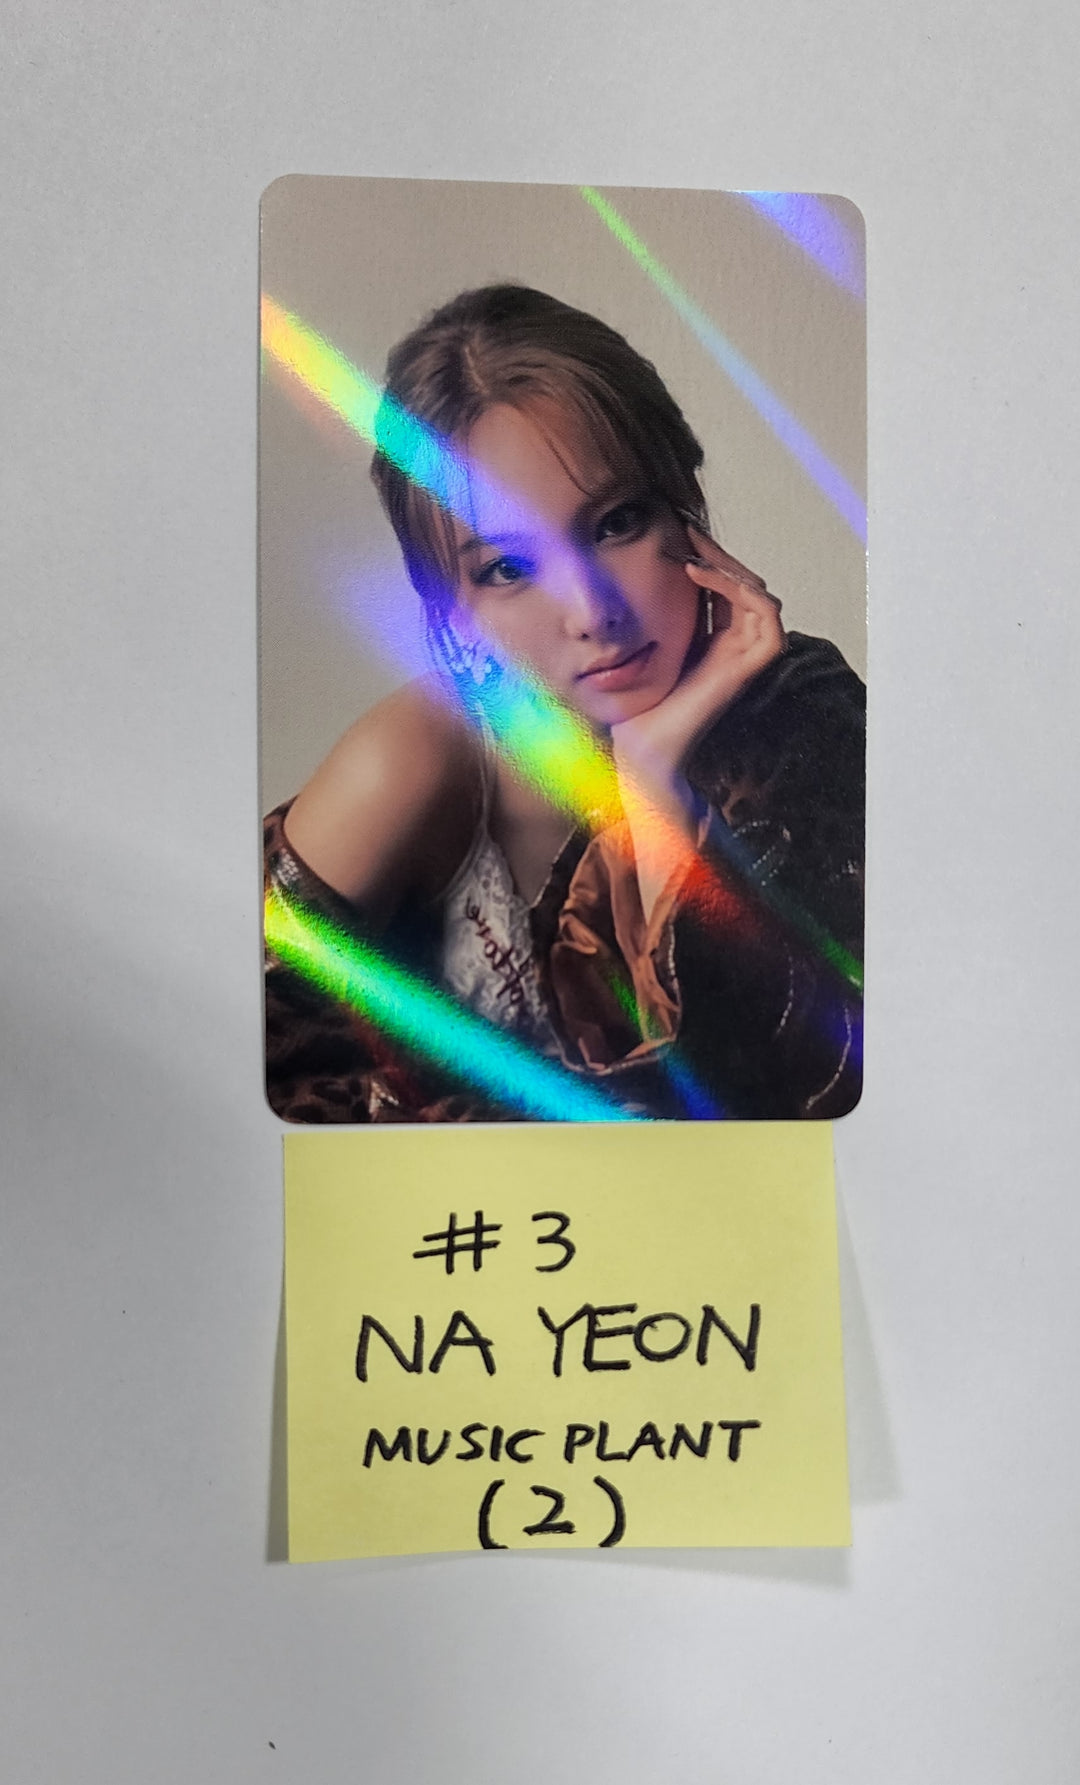 ナヨン「IM NAYEON」 - Music Plant 予約特典ホログラムフォトカード